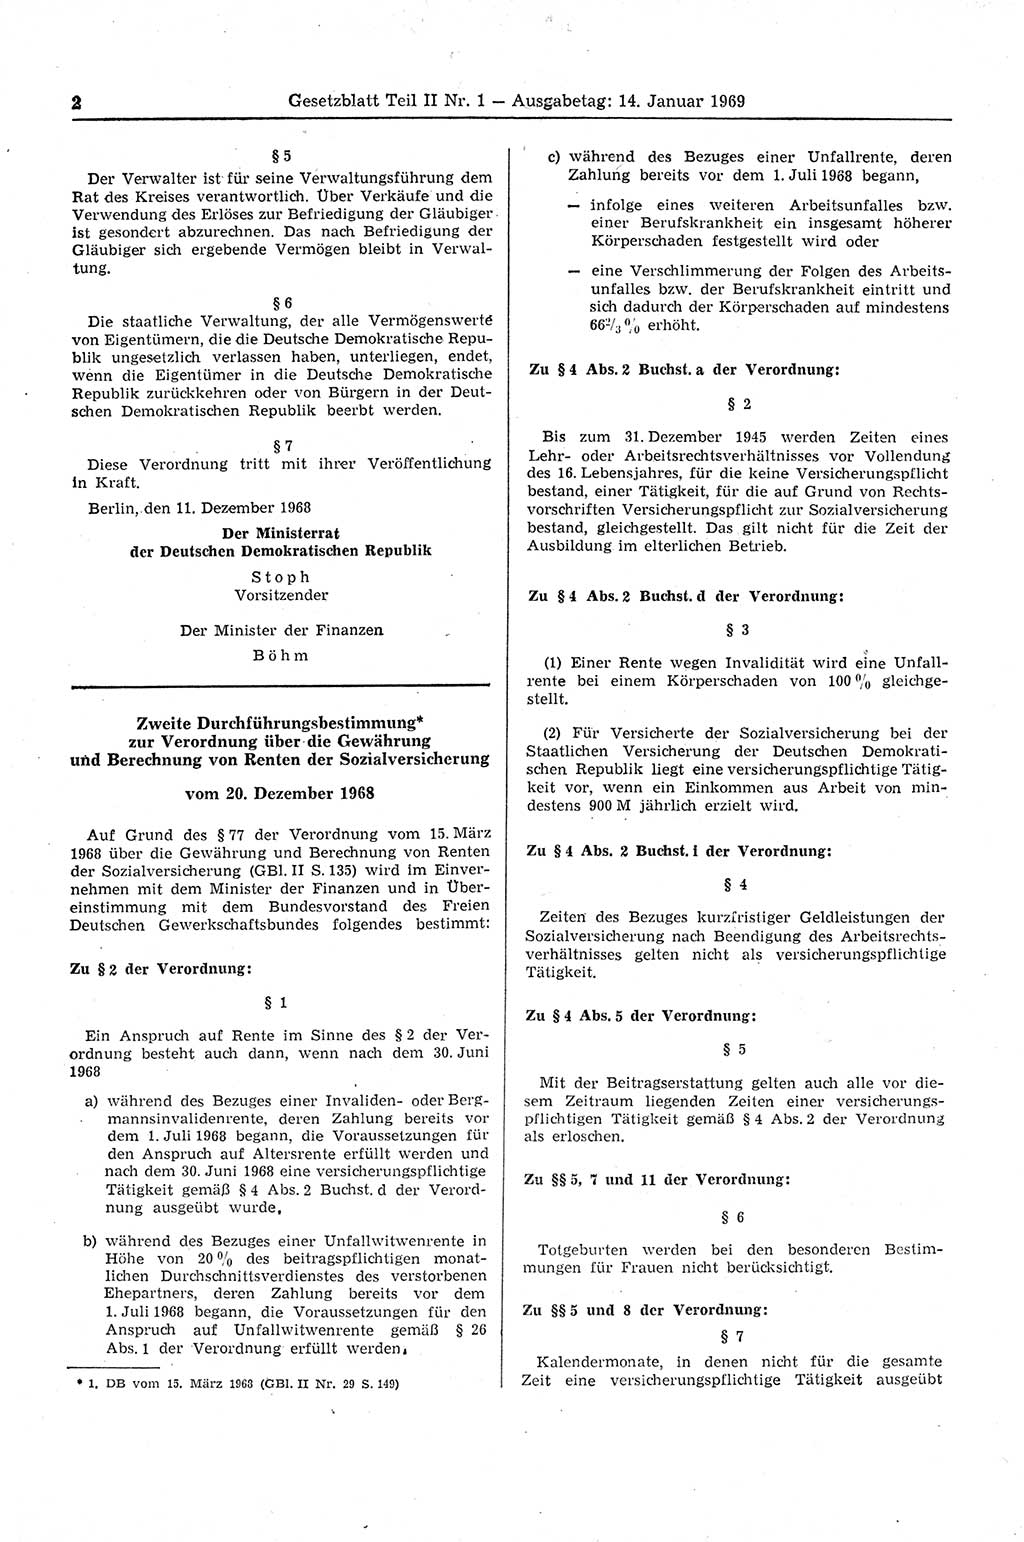 Gesetzblatt (GBl.) der Deutschen Demokratischen Republik (DDR) Teil ⅠⅠ 1969, Seite 2 (GBl. DDR ⅠⅠ 1969, S. 2)